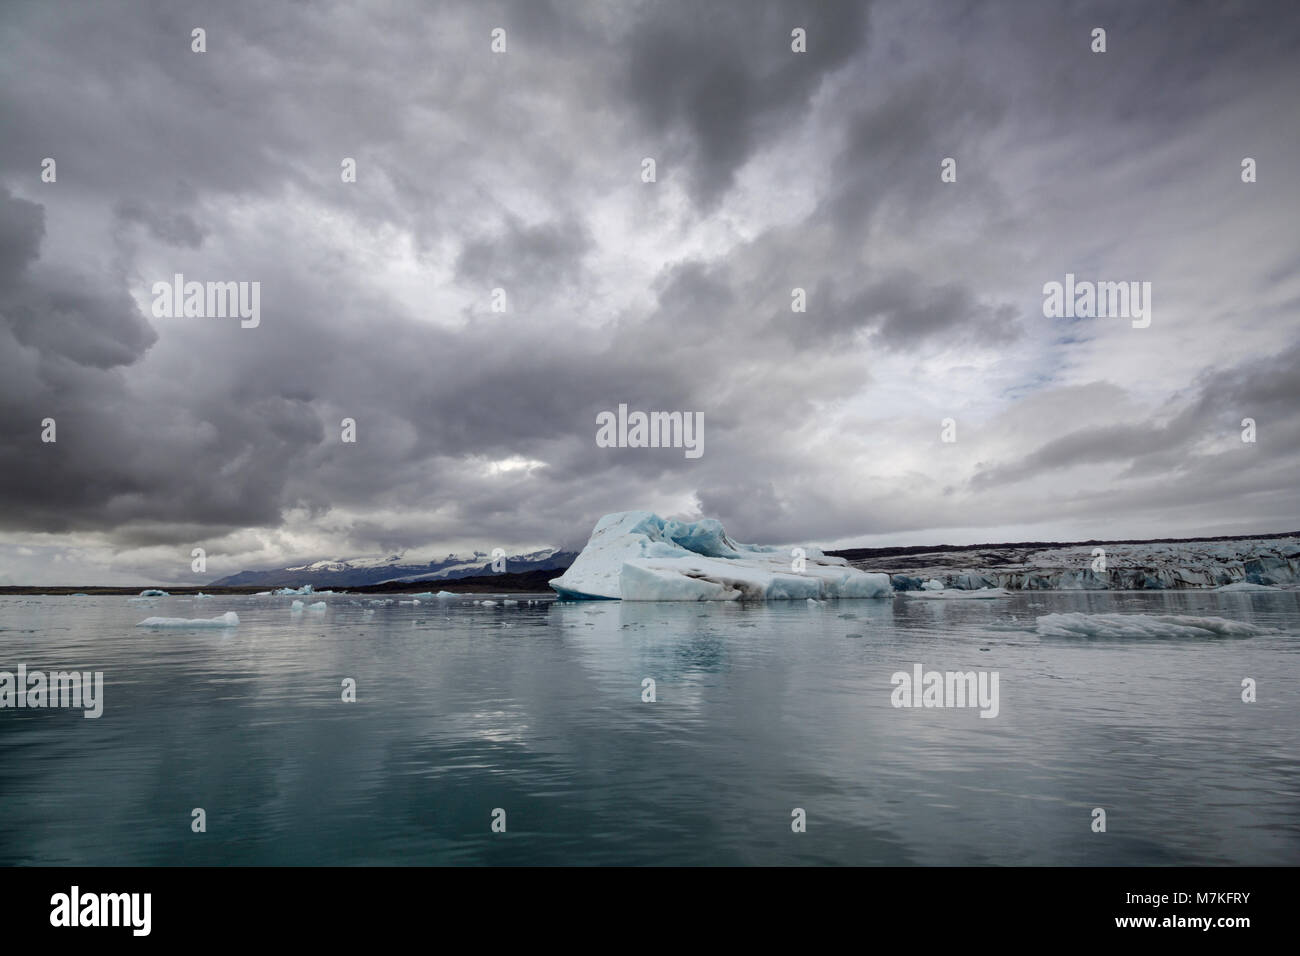 Nuages spectaculaires prises à partir d'un bateau sur le lac Jokulsarlon Islande, où les icebergs flottent sur la mer Banque D'Images